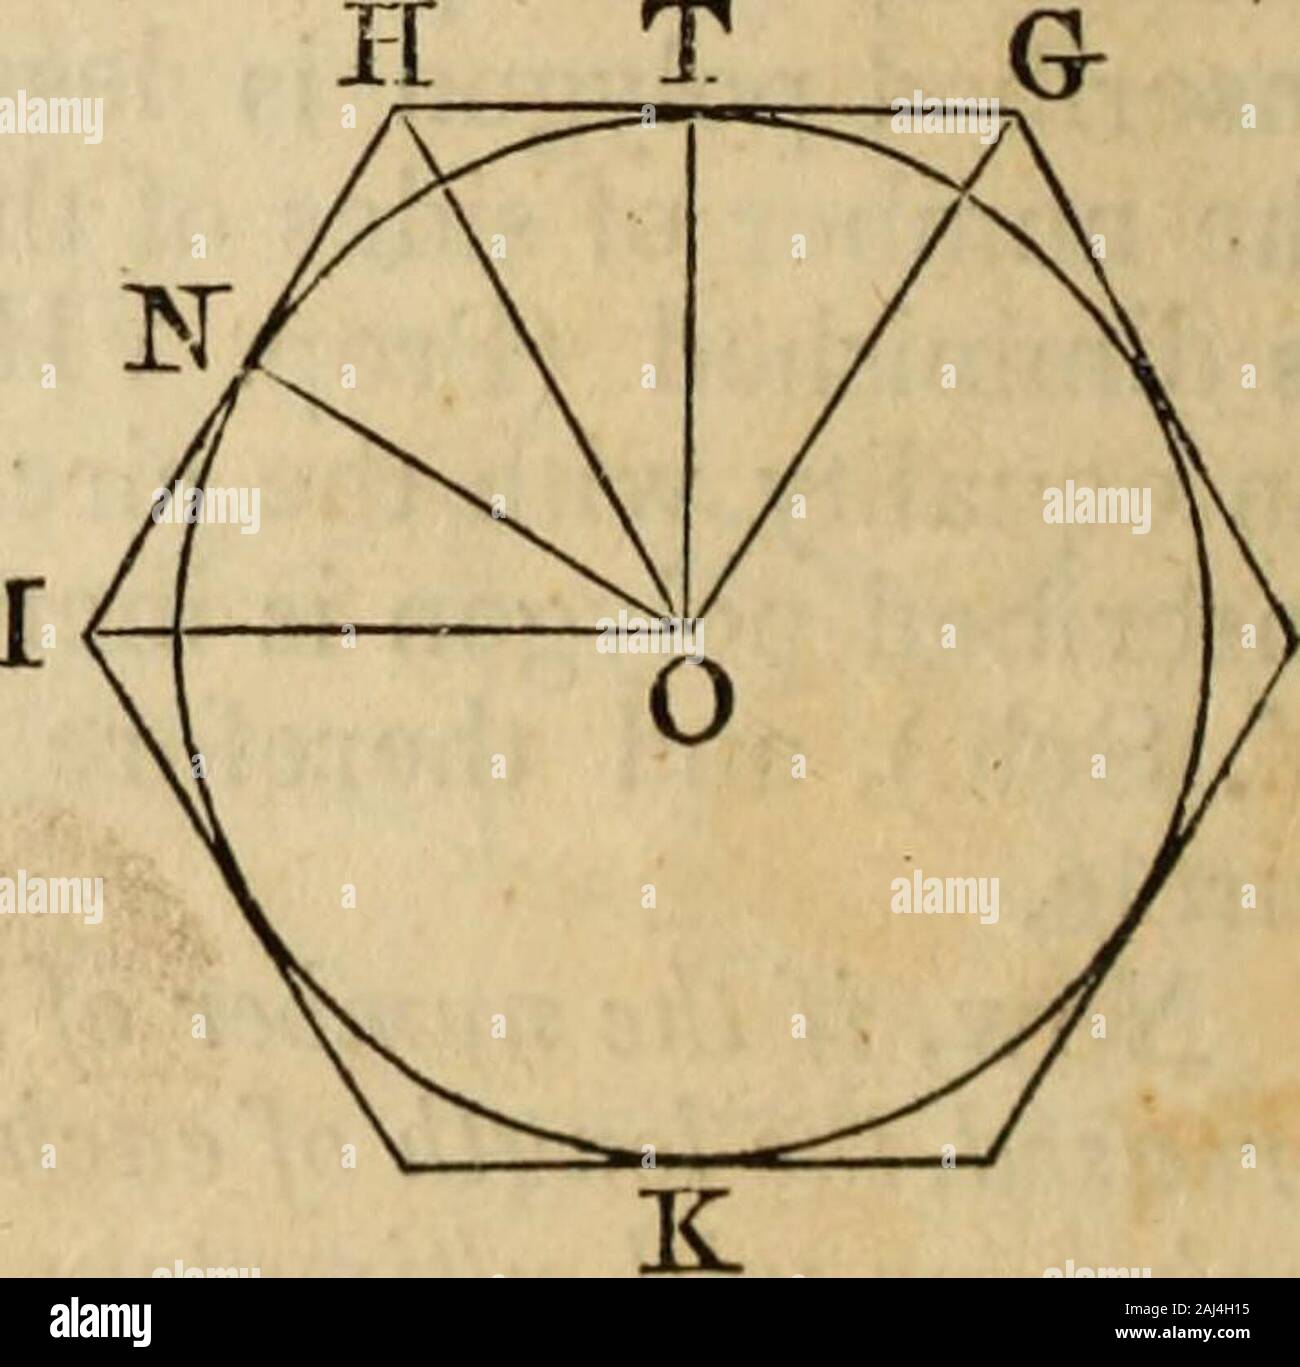 Elementos de geometría y trigonometría . ome un radio del círculo, parte de  la polj andany^gon, como ABCO, se convertirá en el sectorOAKBC. y la parte  del perímetro AB-fBC, beccmothe AKBG arco.